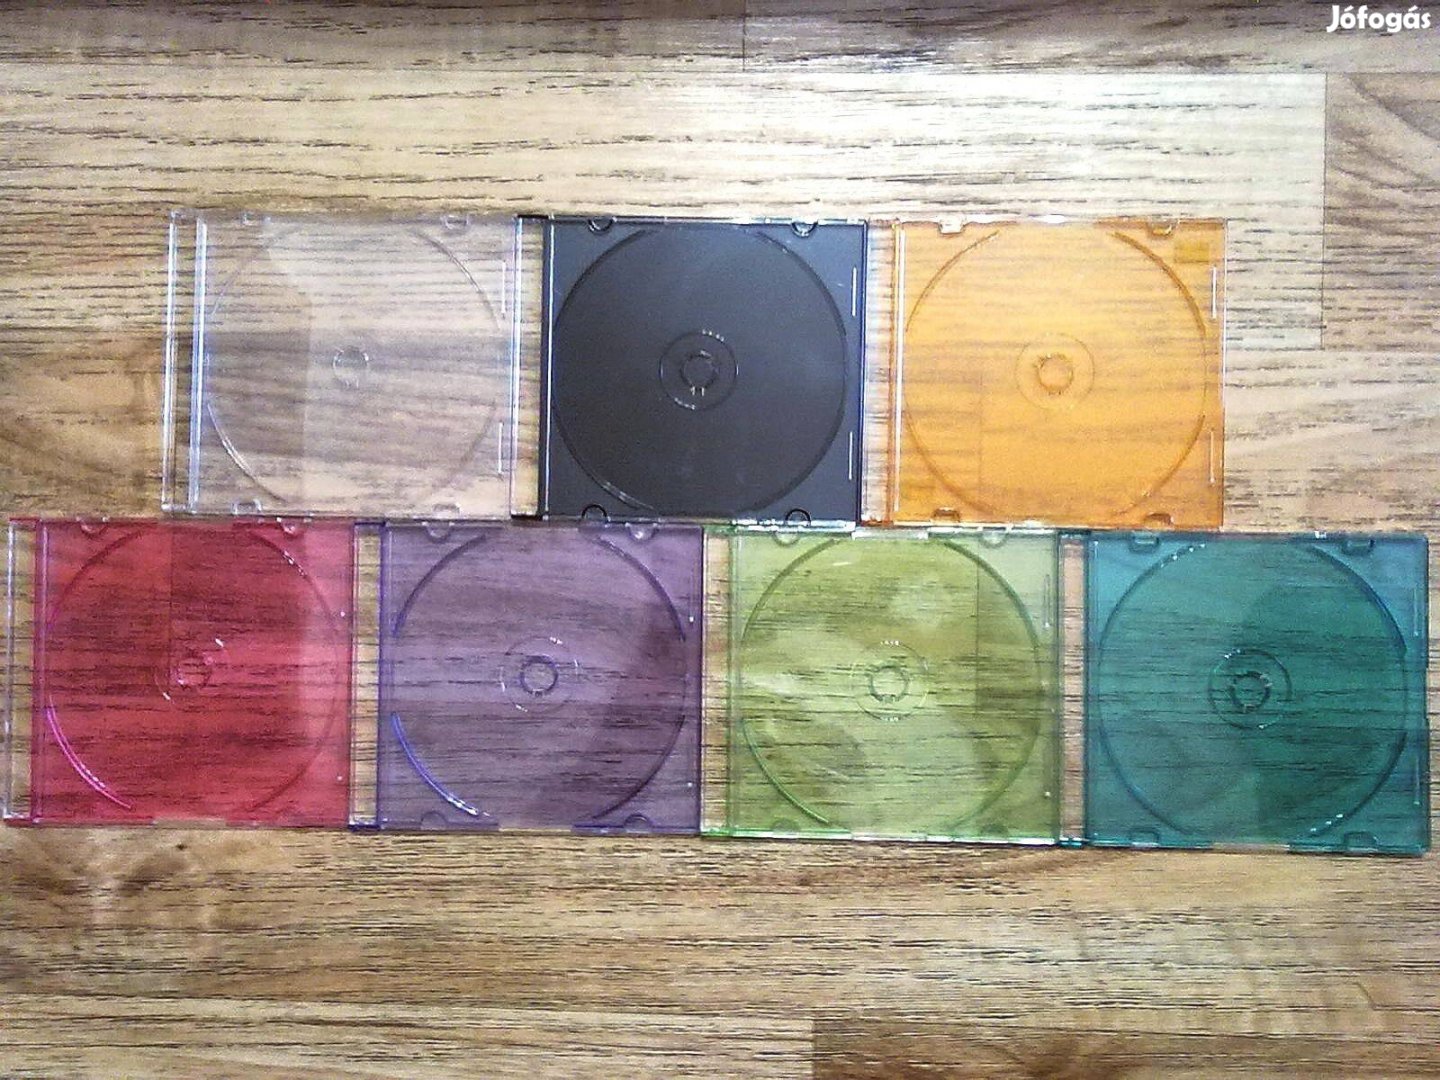 Színes CD slim tokok (7 fajta színben) egy csomagban